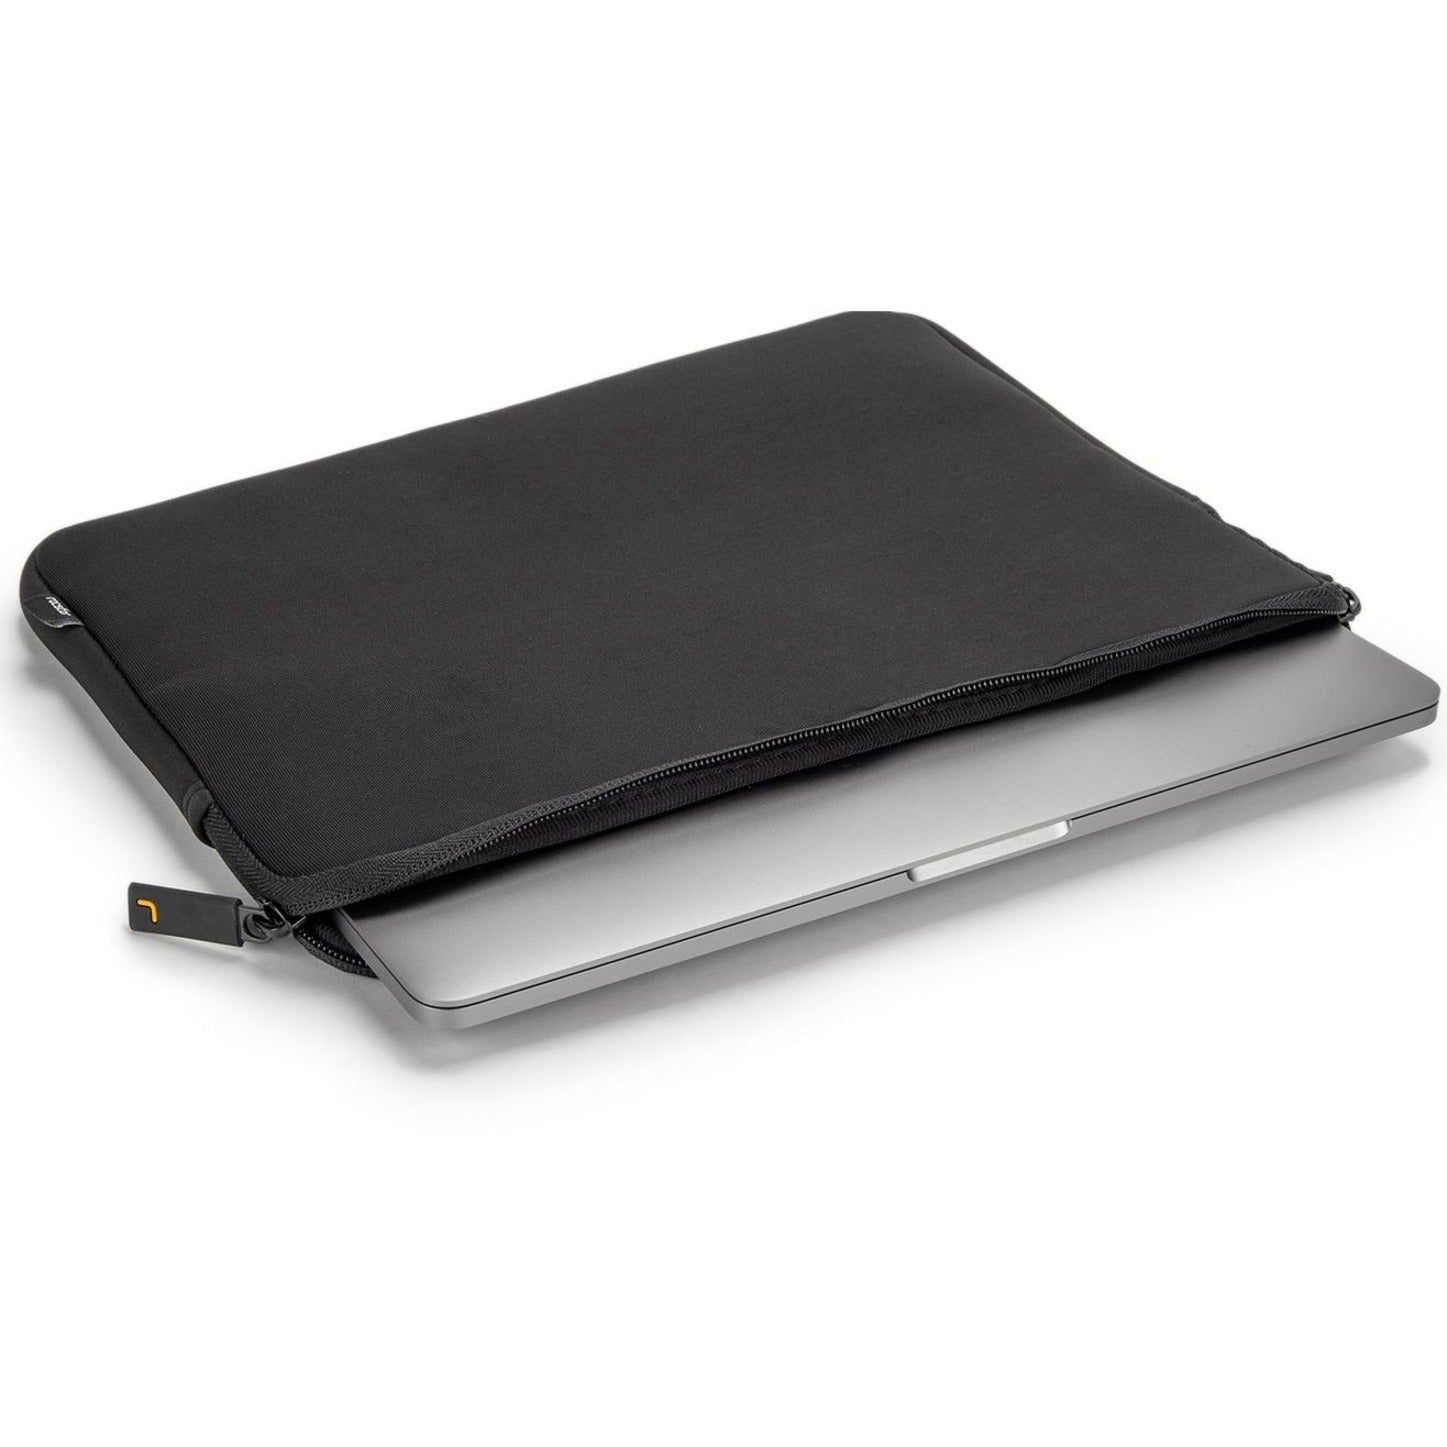 Rocstor Y1CC006-B1 Premium 15.6/16 Water-resistant Lycra Neoprene Laptop Sleeve, Black